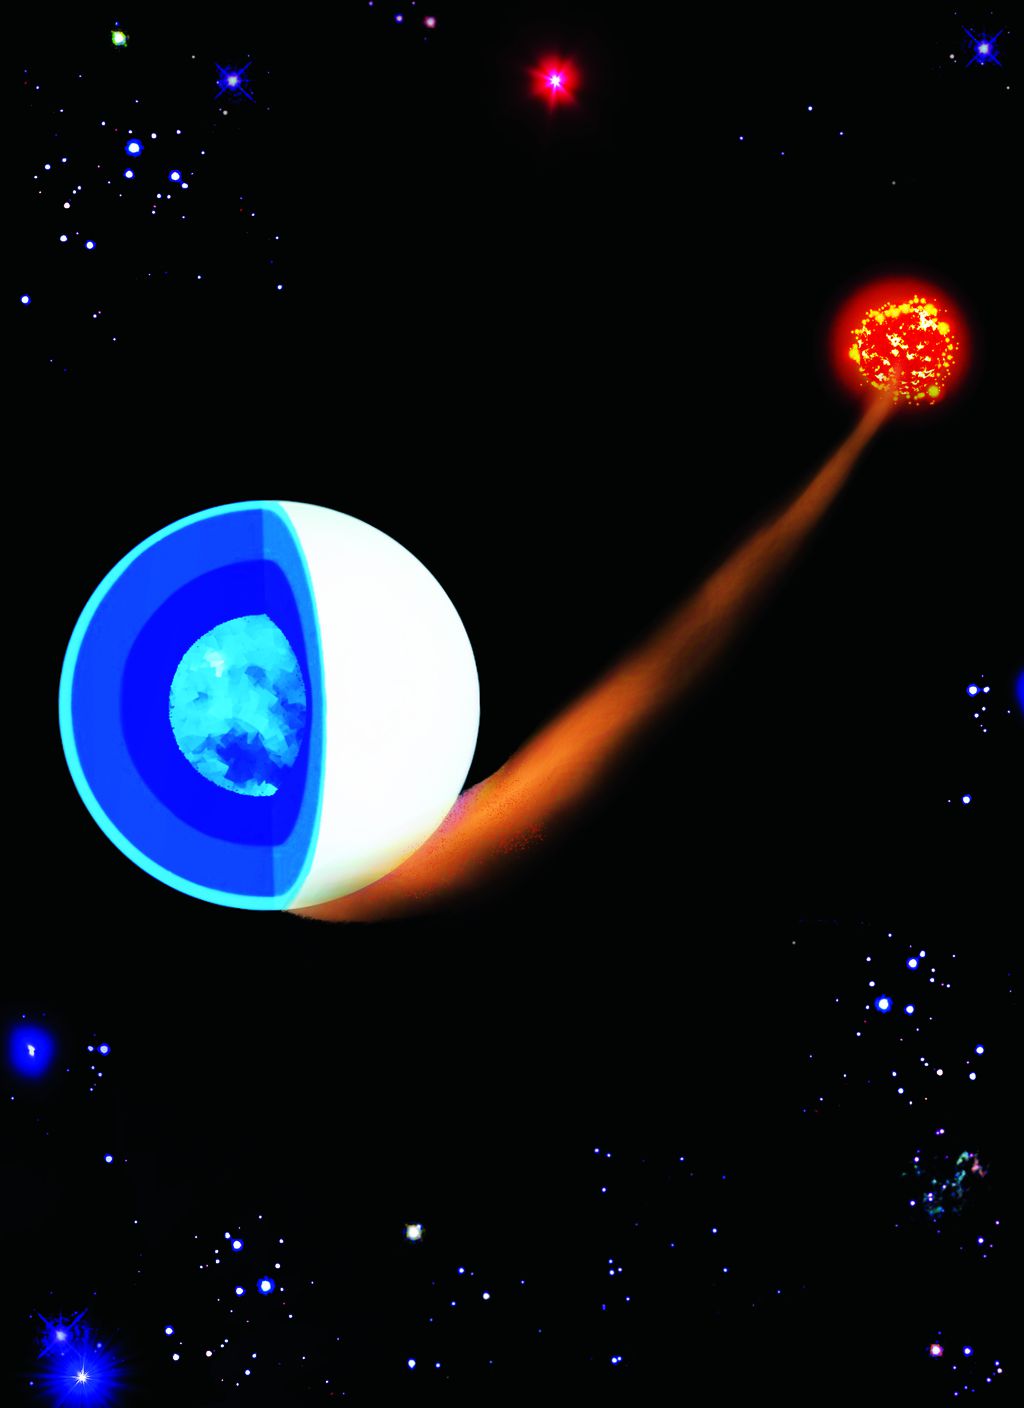 O campo magnético poderoso encontrado em algumas anãs brancas pode estar relacionado à interação de sistemas binários (Imagem: Reprodução/Paula Zorzi)